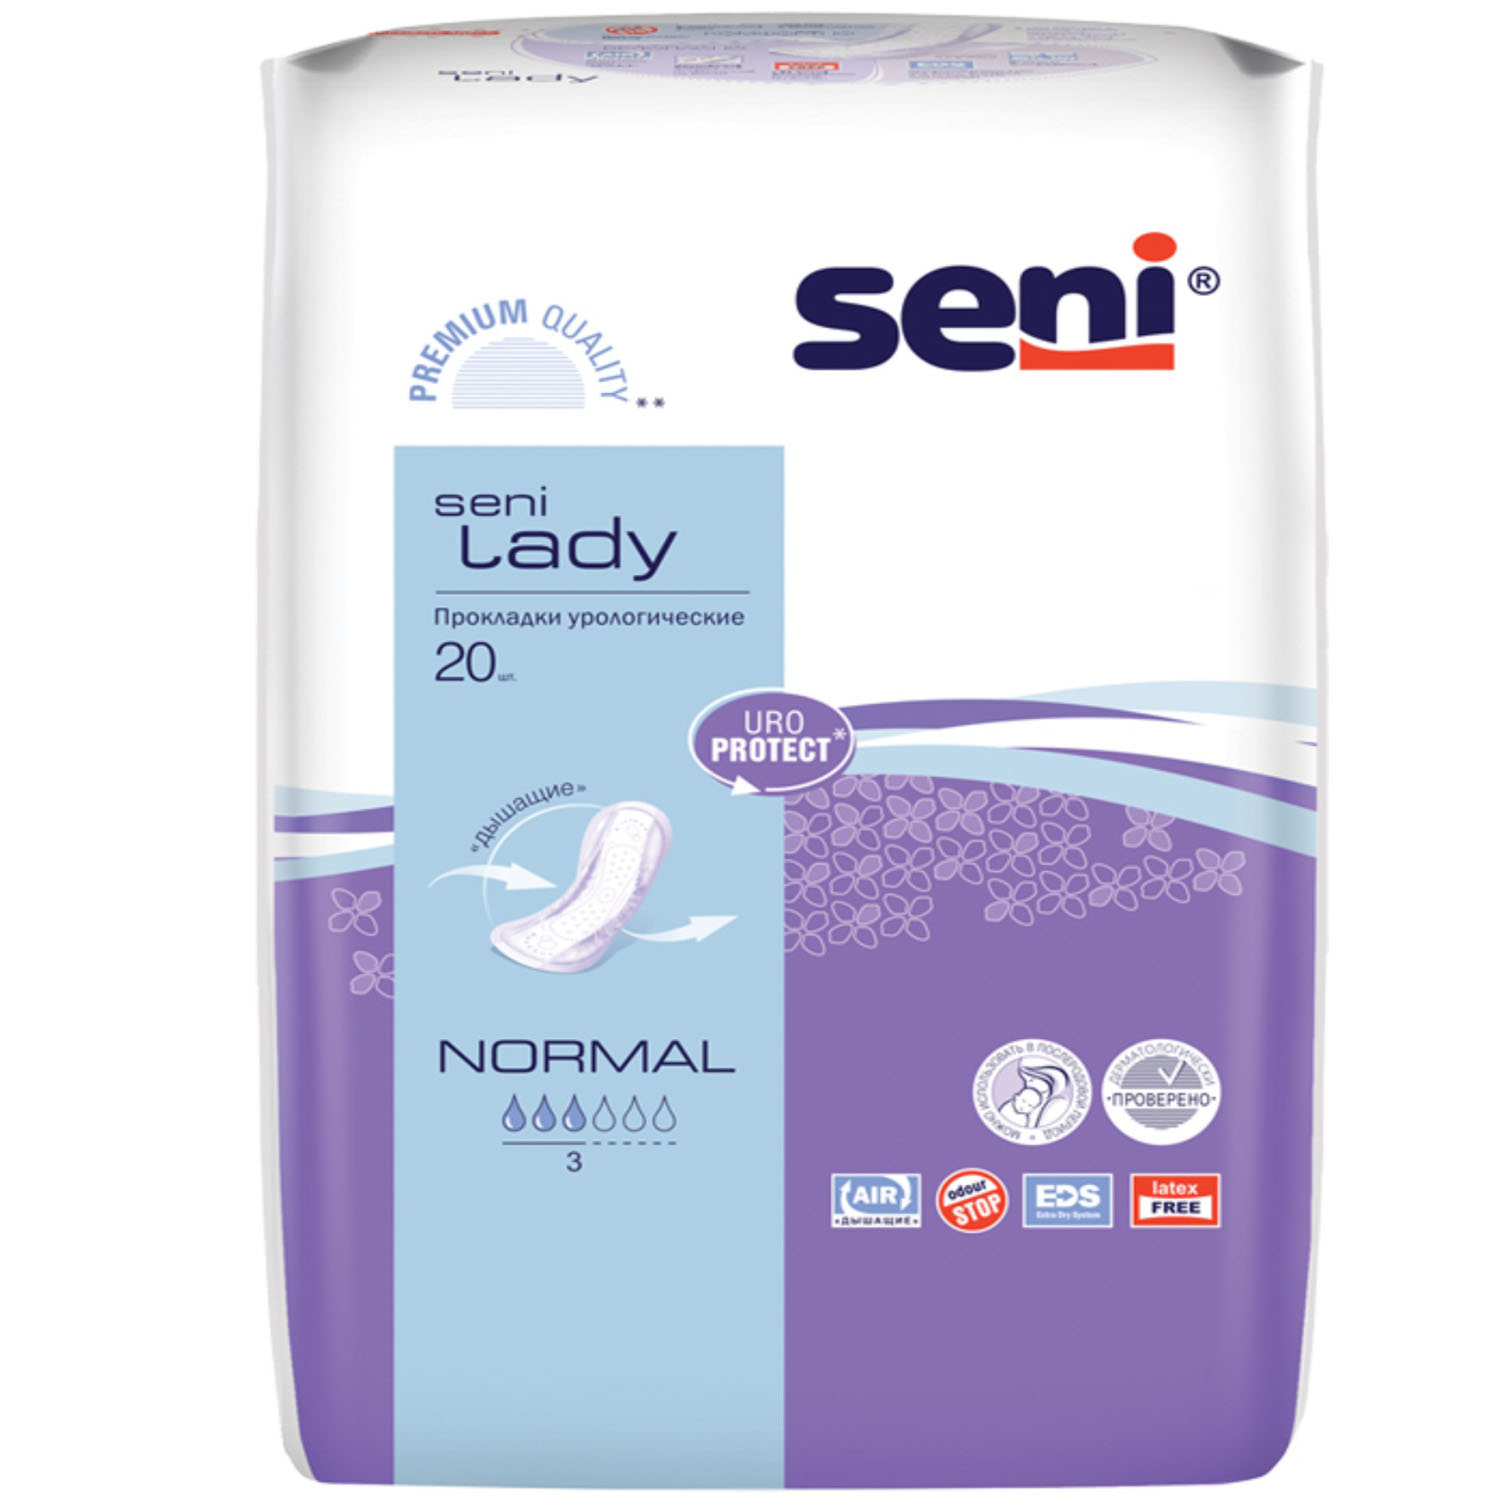 Seni Урологические прокладки для женщин Normal 10,5 х 28 см, 20 шт (Seni, Lady)